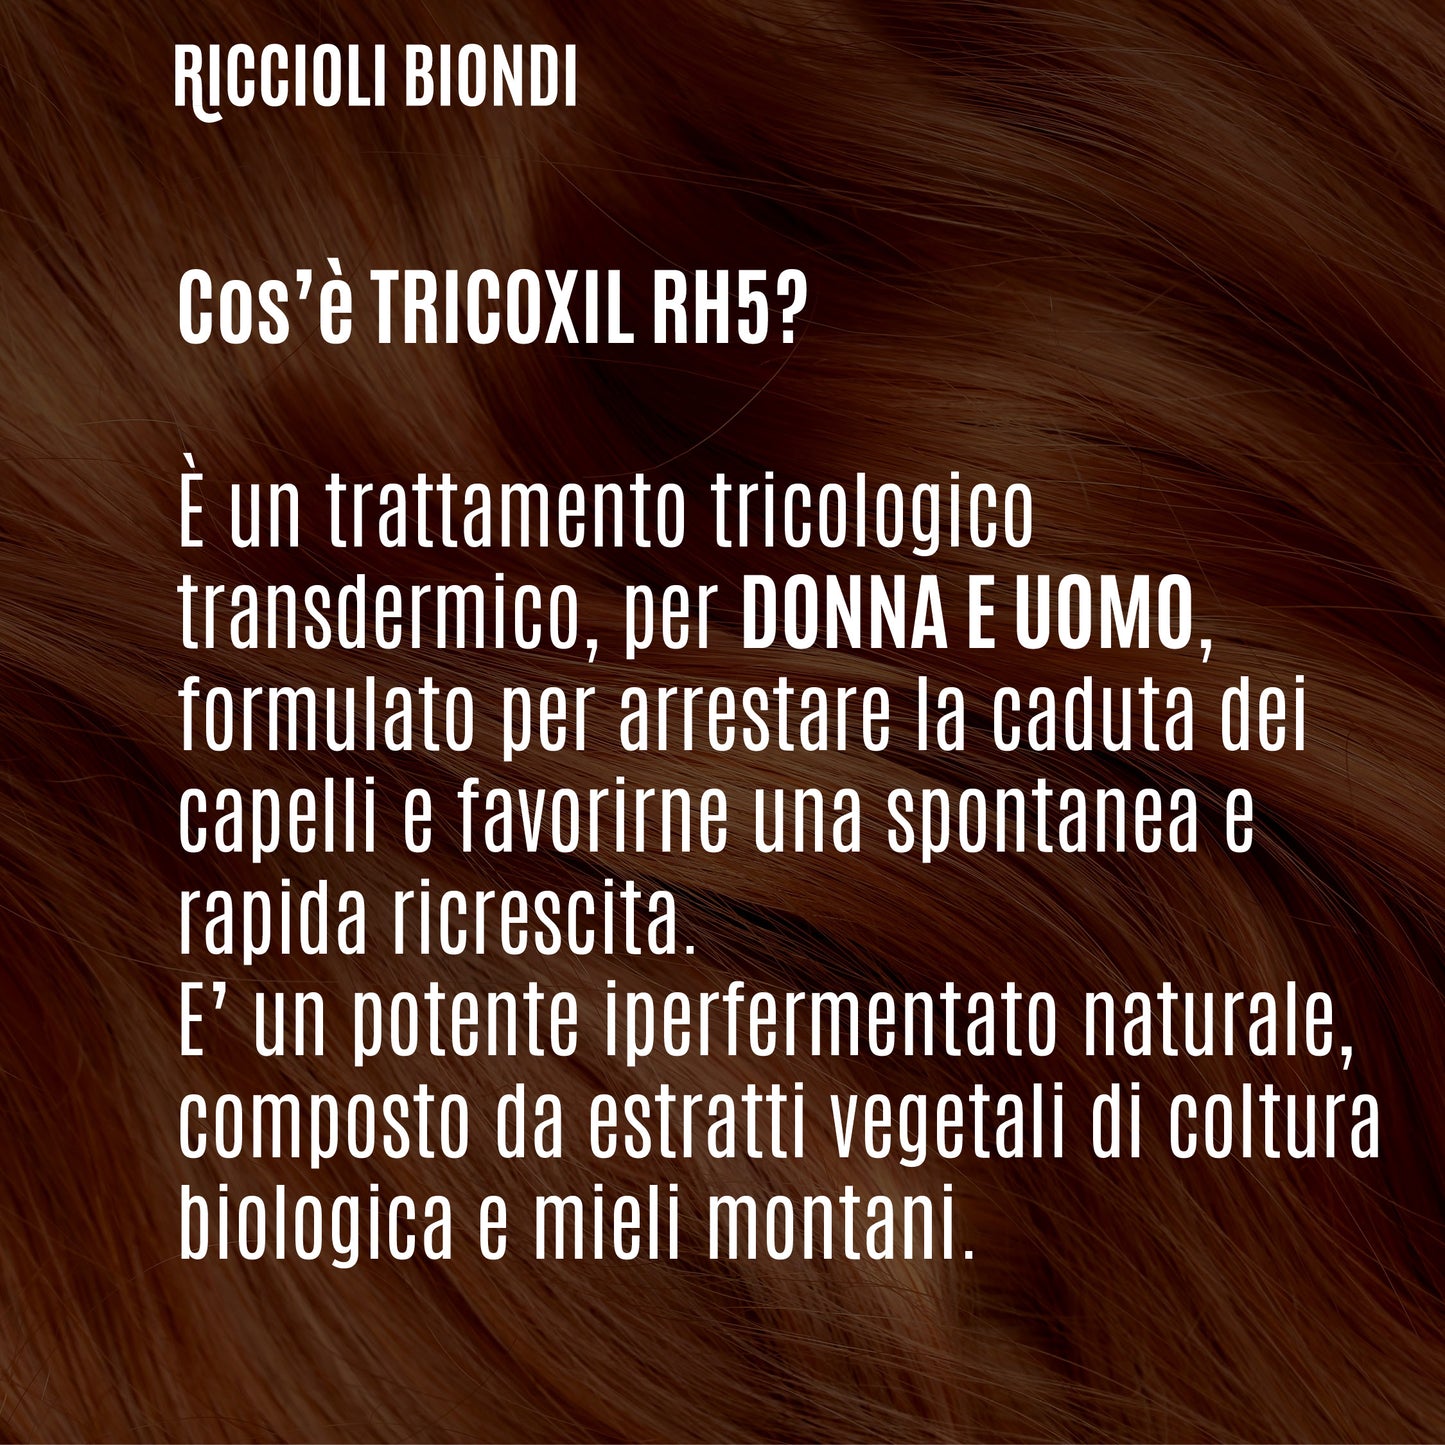 Tricoxil HR5 - Trattamento ricrescita rigenerante